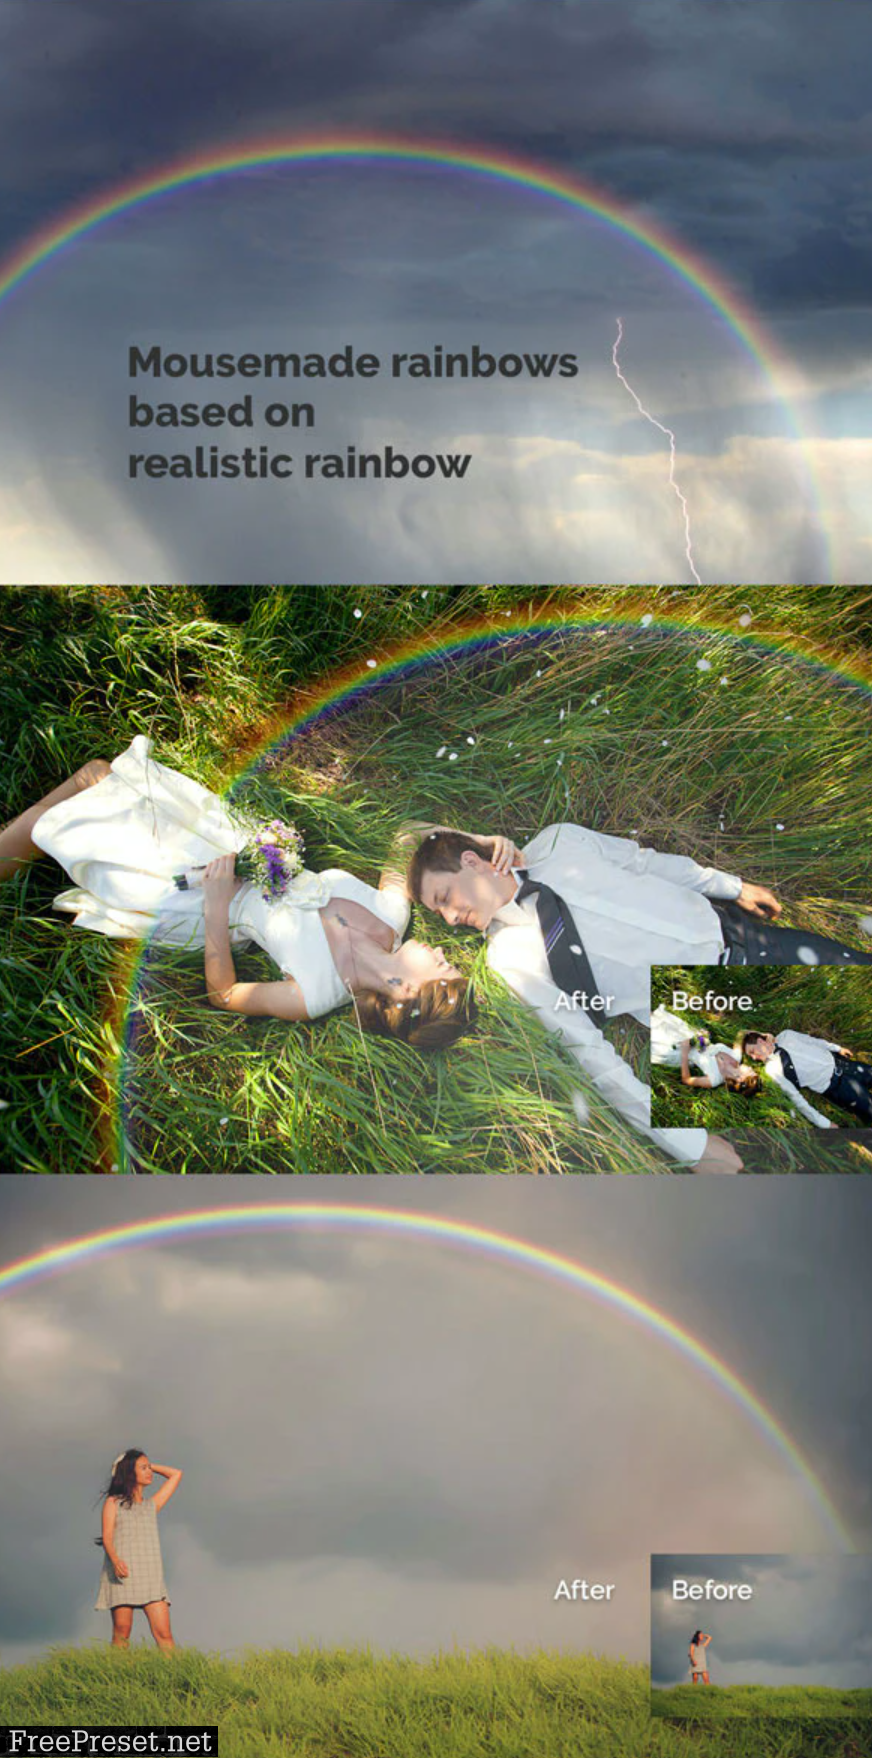 43 Rainbow Photo Overlays 2.0 27028146